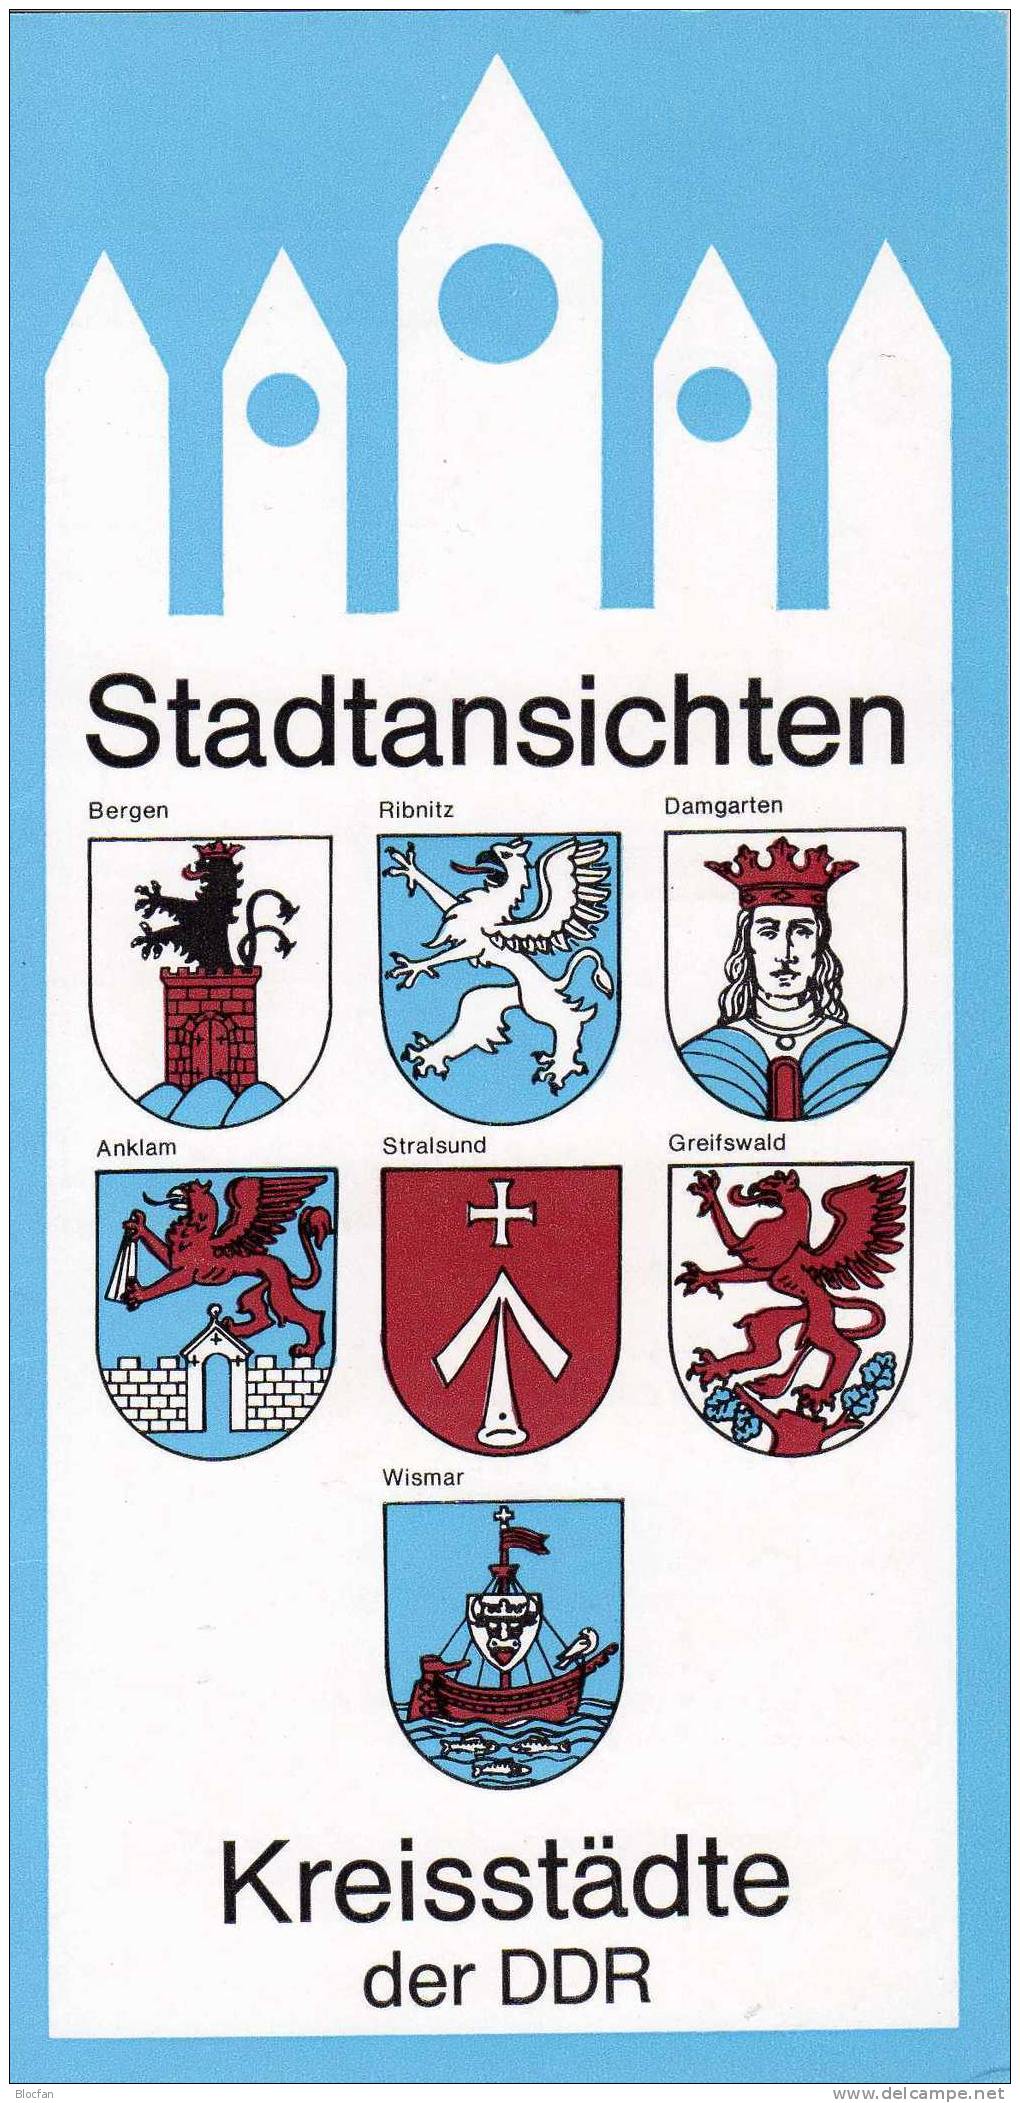 Gedenkblatt Städte - Luftbilder DDR 3161/6 **/o Plus ZB3/88 SST 15€ - 1° Giorno – FDC (foglietti)